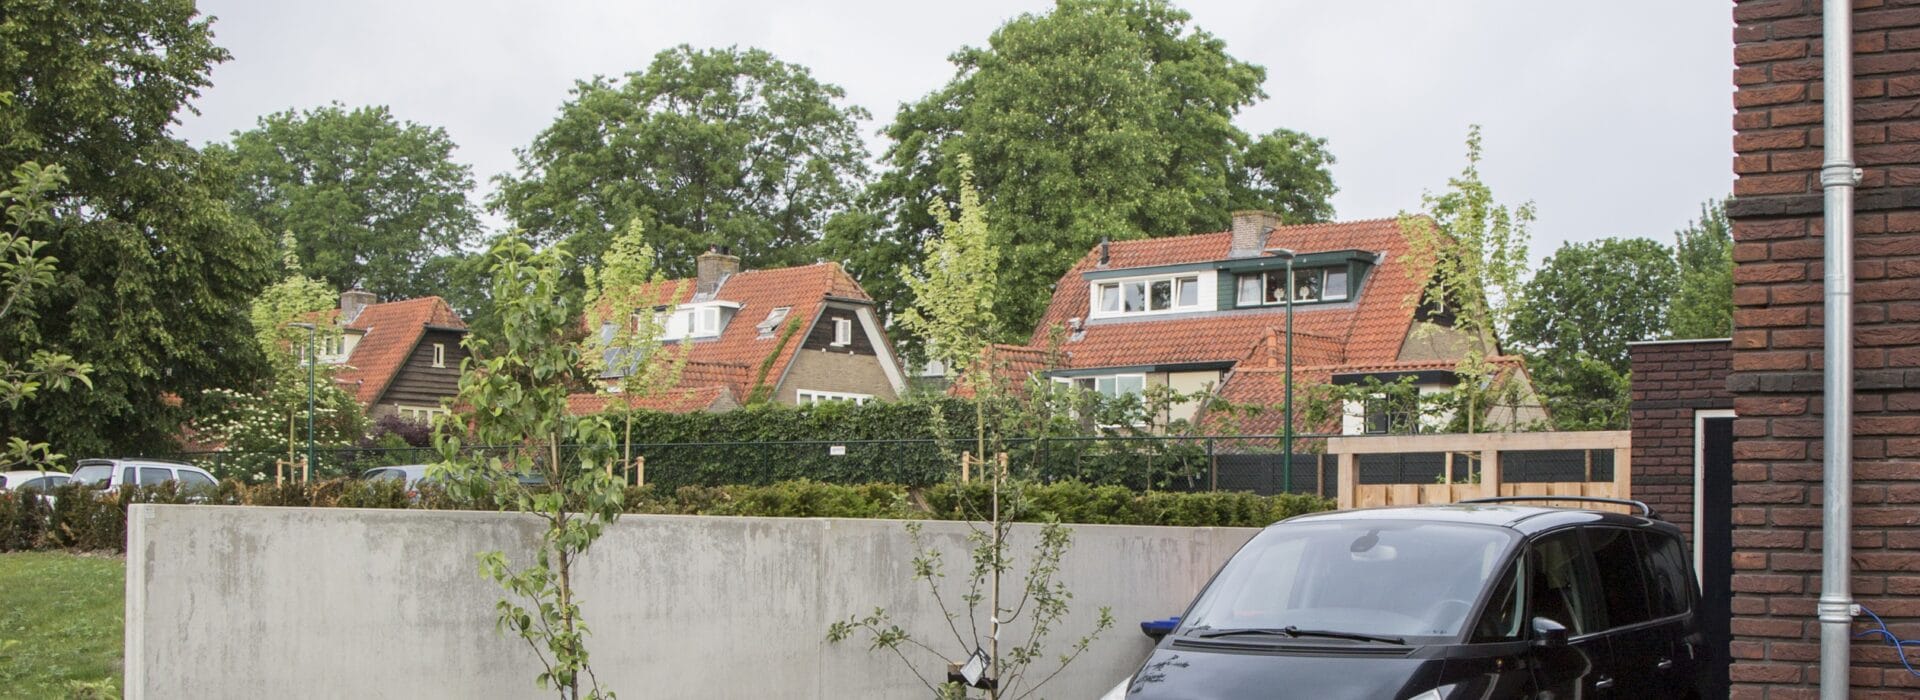 Bosch Beton - Keerwanden in nieuwe woonwijk Land van Bieshaer in Soest